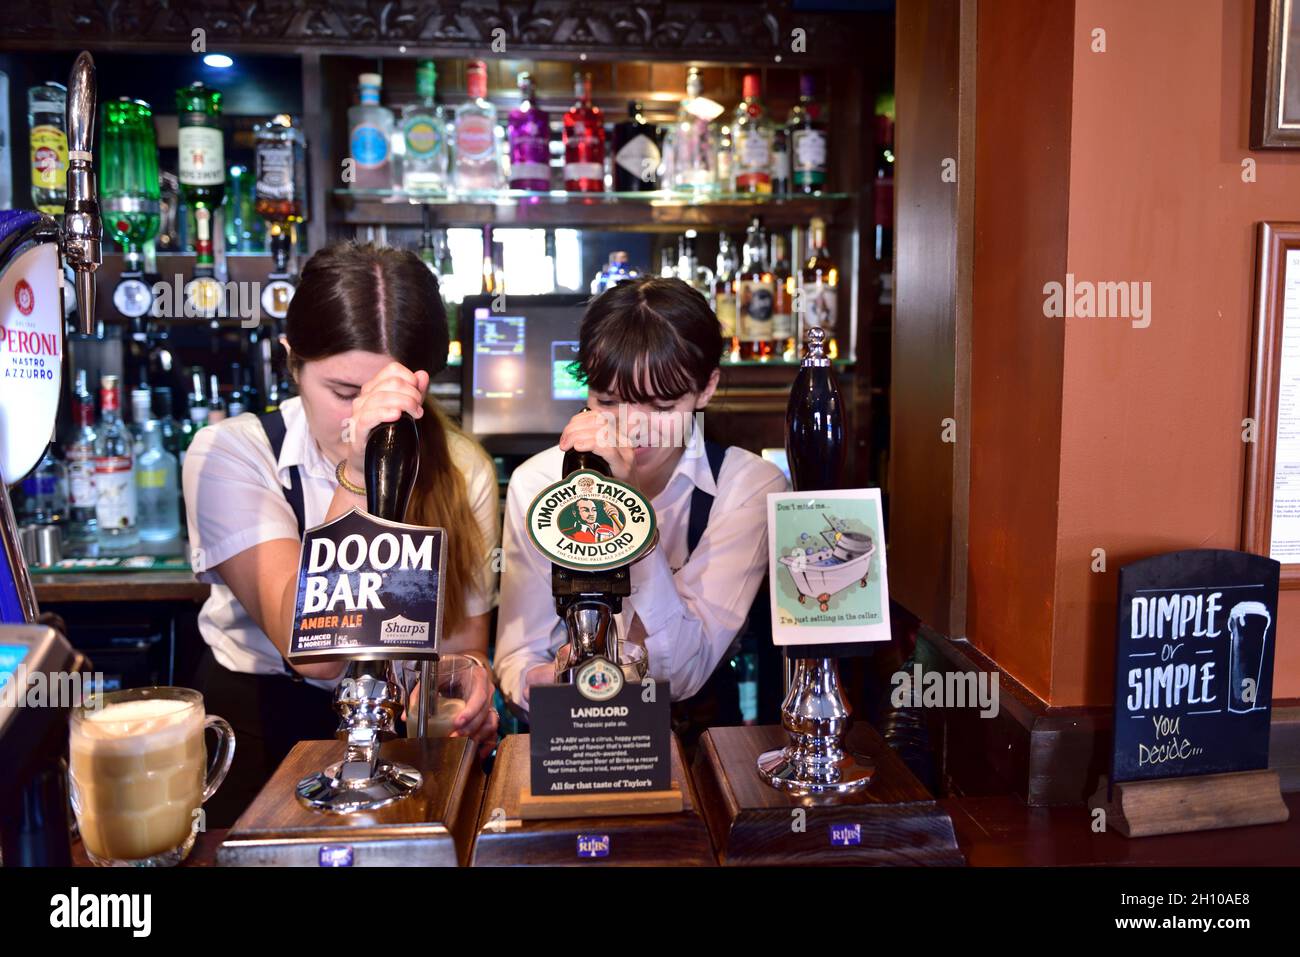 Deux belles barmans tirent des pintes derrière des pompes à bière à main au pub Tap & Spile Birmingham, Royaume-Uni Banque D'Images